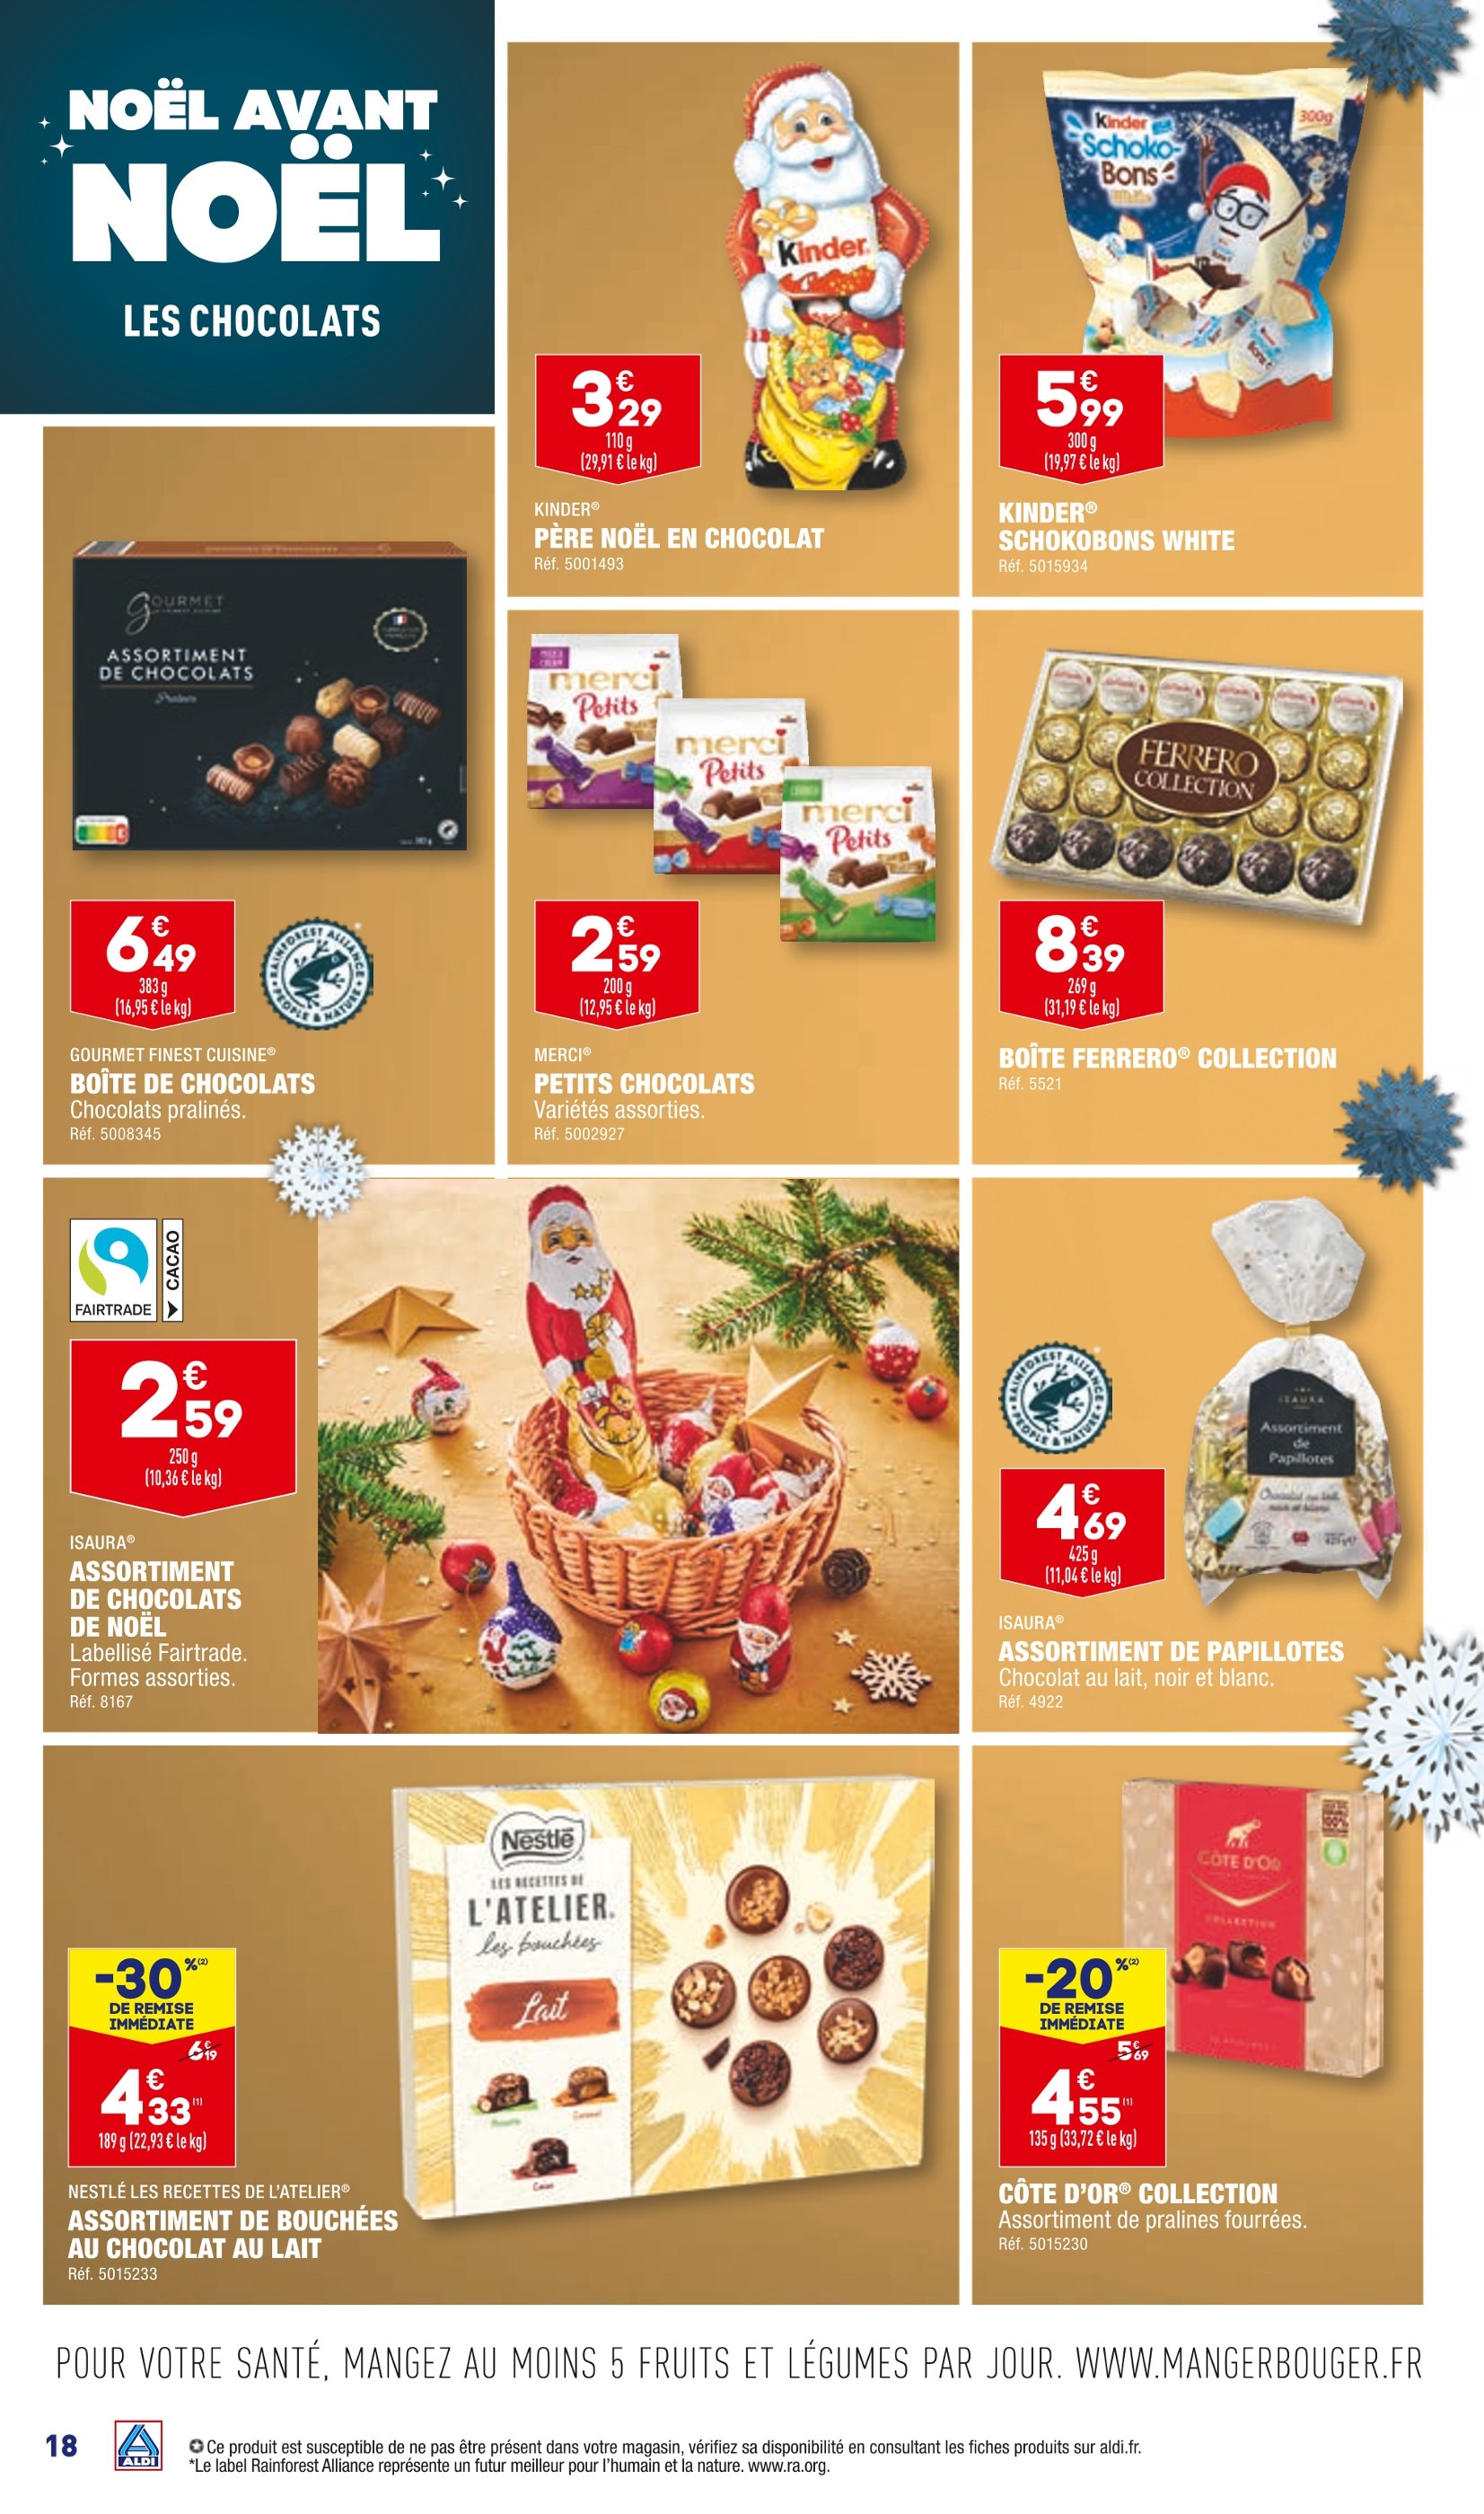 Chocolat noir et au lait moulage Père Noël KINDER : le moulage de 110g à  Prix Carrefour